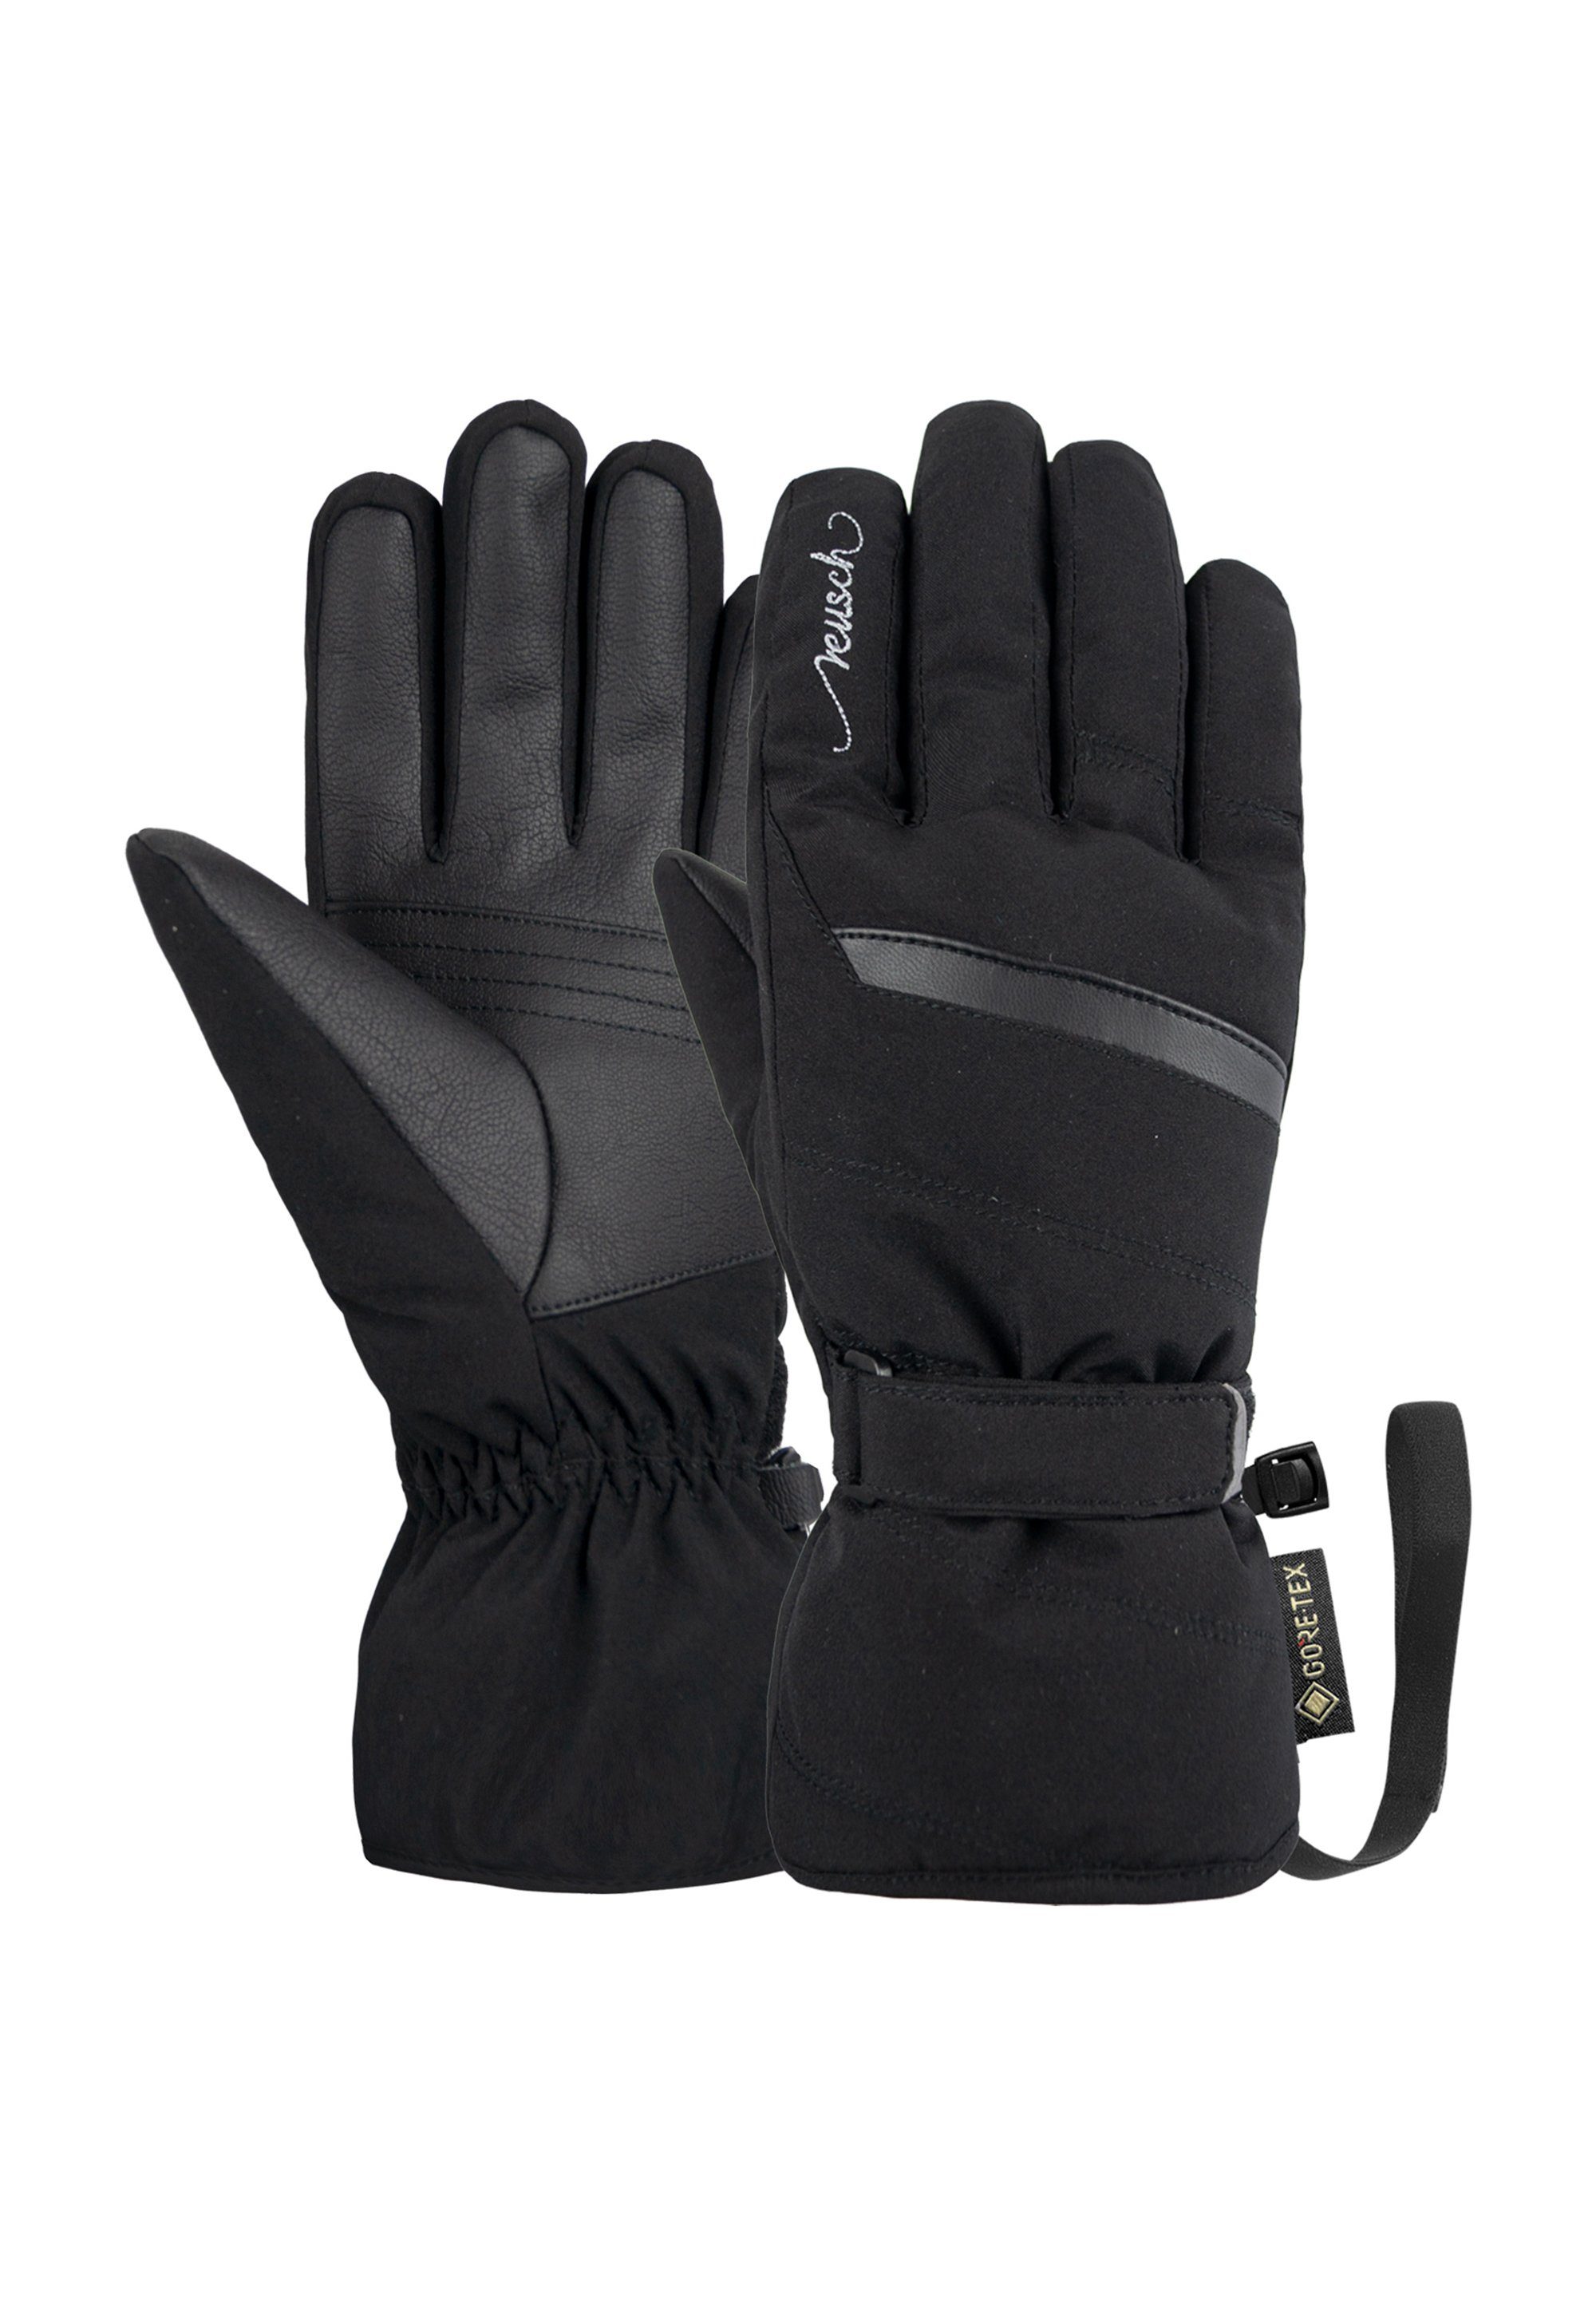 Sandy schwarz-silberfarben GORE-TEX wasserdichter und in warmer, Skihandschuhe atmungsaktiver Reusch Ausführung